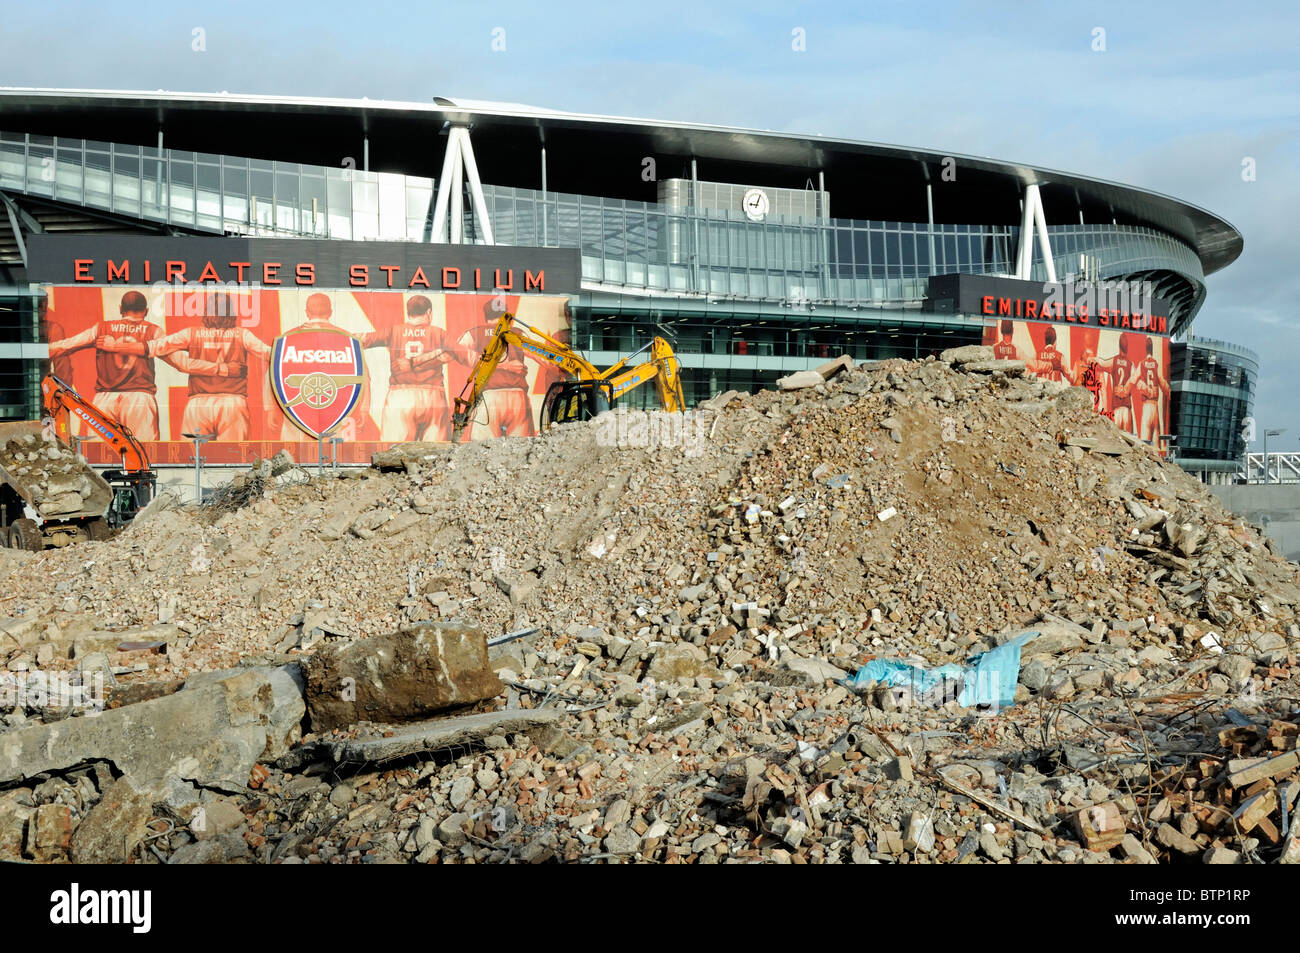 Abbruchschutt vor dem Arsenal Emirates Stadium, Teil des Queensland Road Development Site, Holloway Islington London, Großbritannien Stockfoto